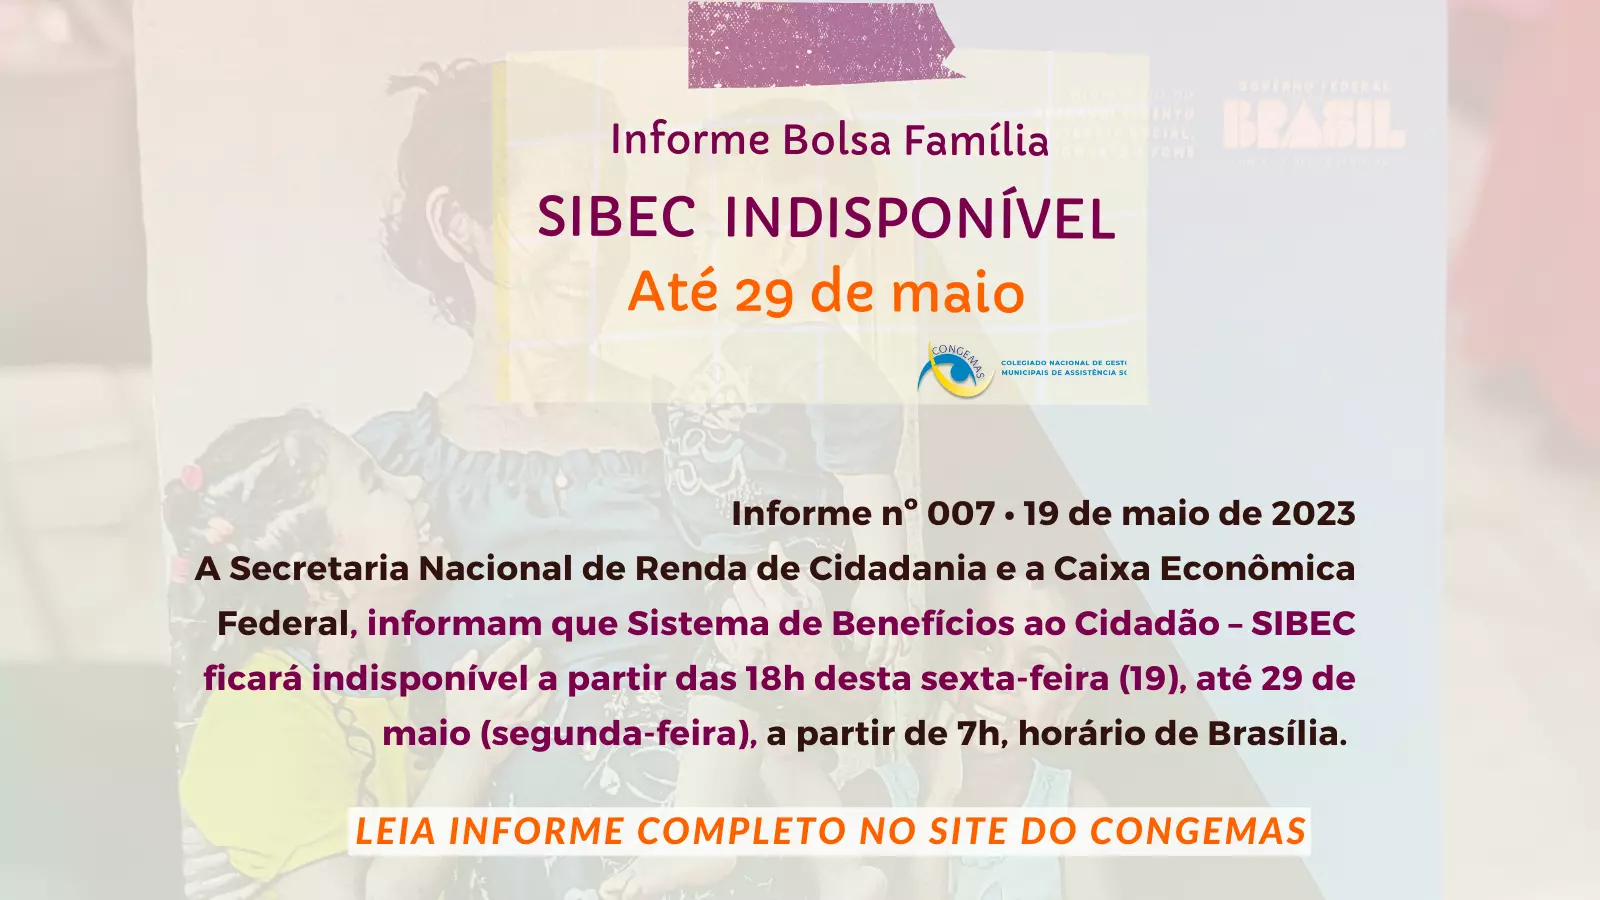 SIBEC - Sistema de Benefícios ao Cidadão indisponível até 29/5